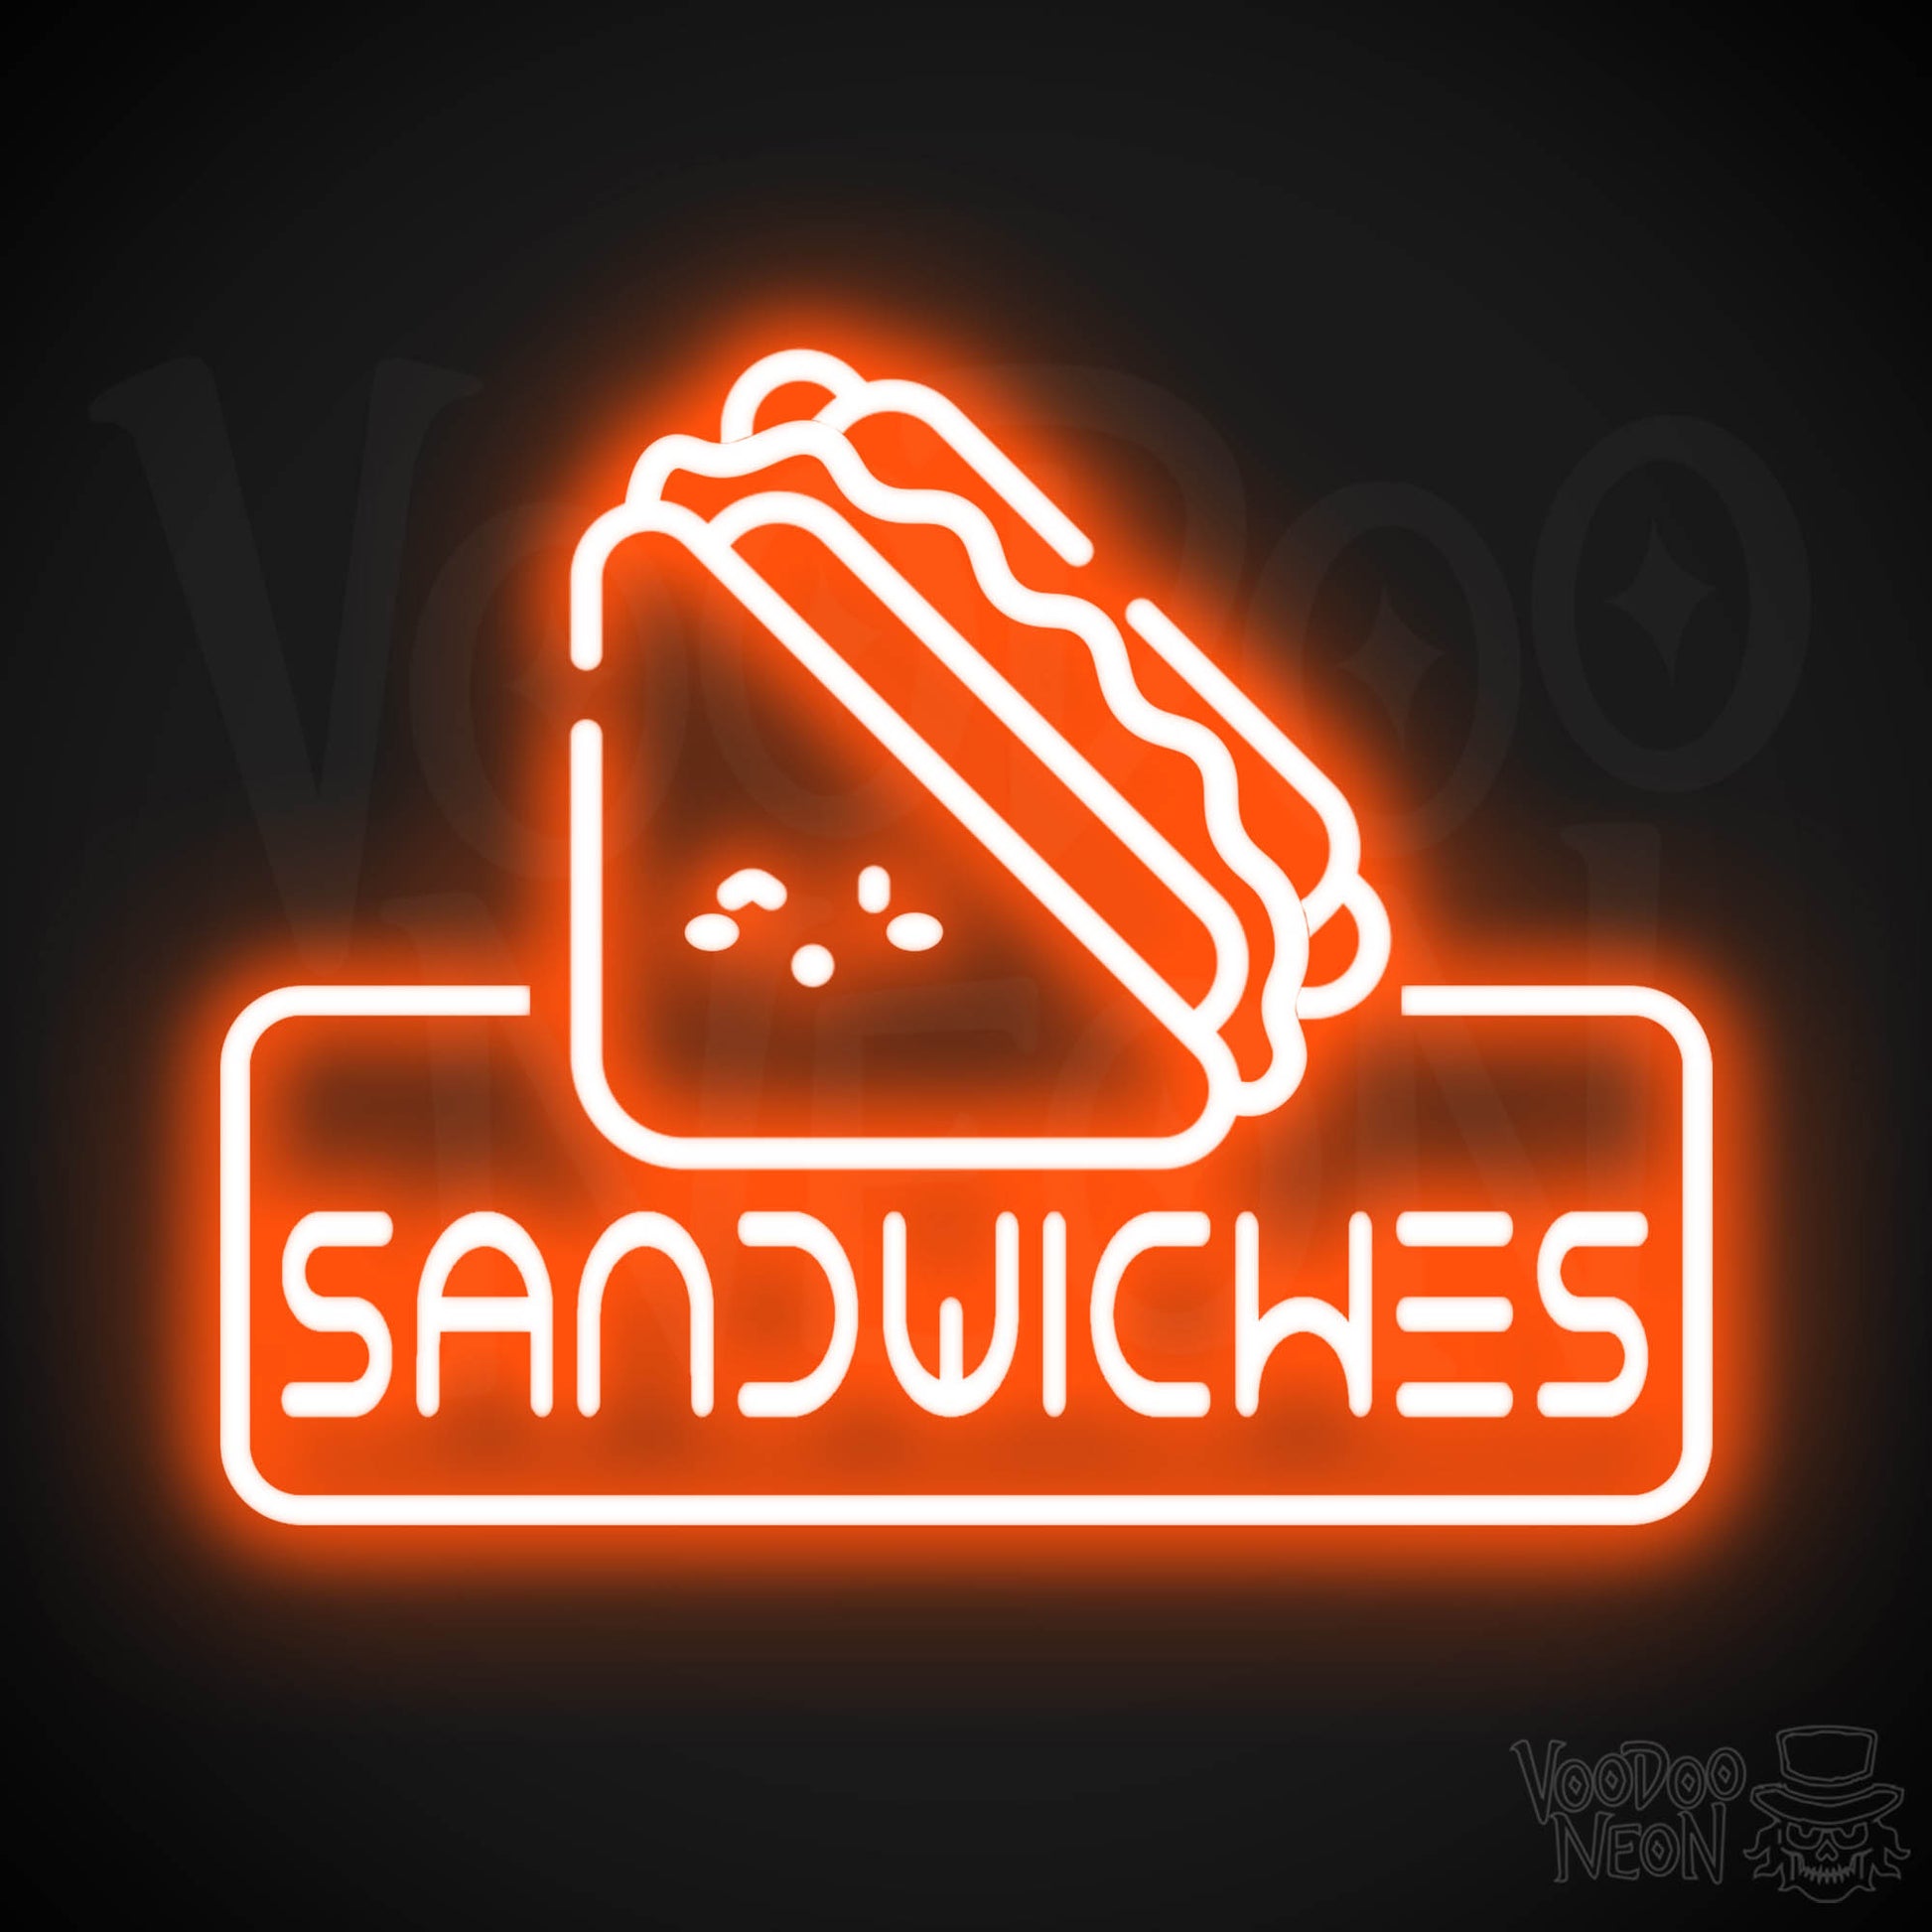 Neon Sandwiches Sign - Sandwich Neon Sign - Neon Sandwich Shop Sign - Color Orange